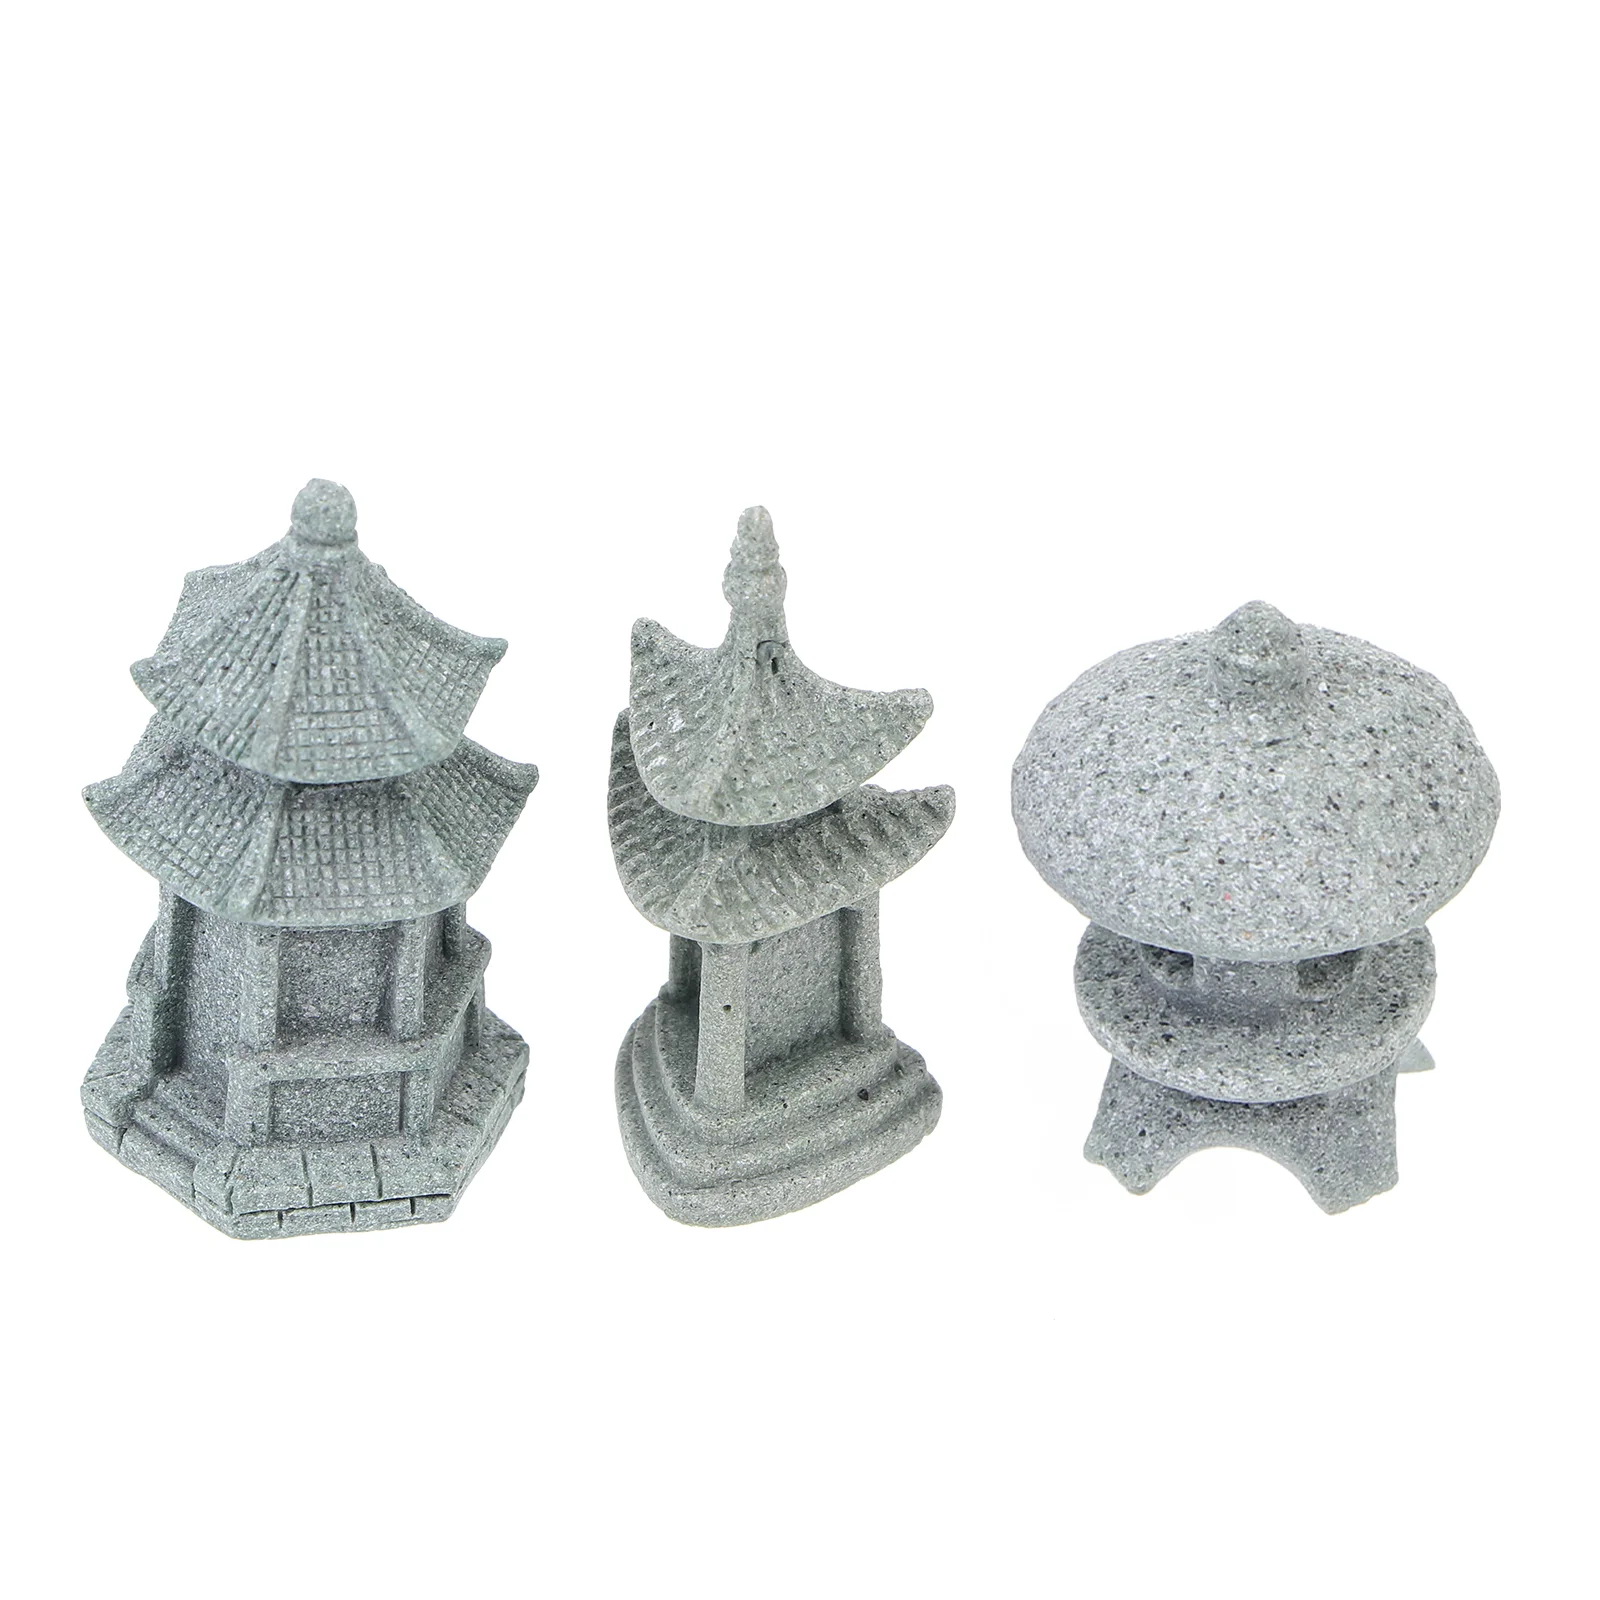 Japanese Garden Decor Japanese Garden Lanterns Artificial Model Sandstone Decor Pagoda Sculpture